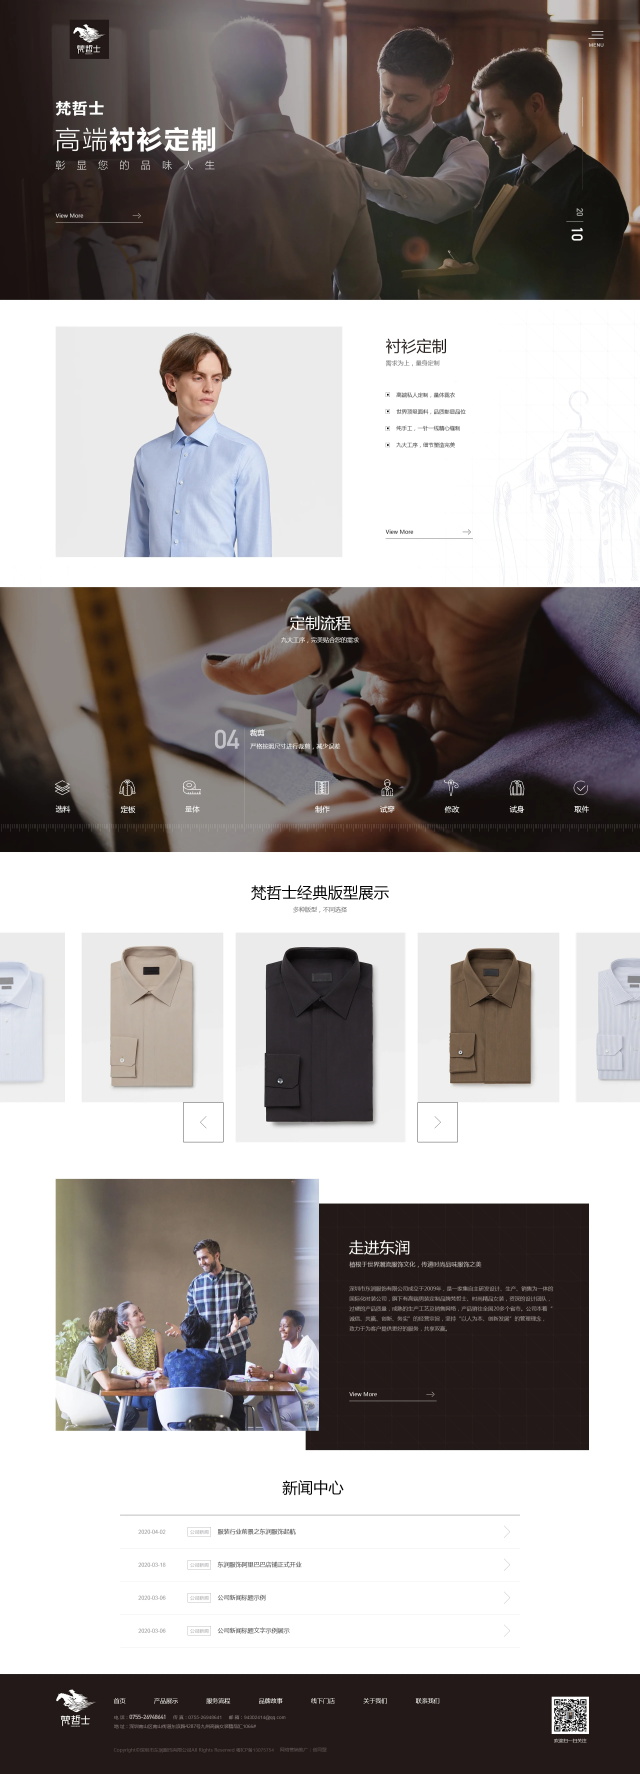 深圳服装企业网站建设案例